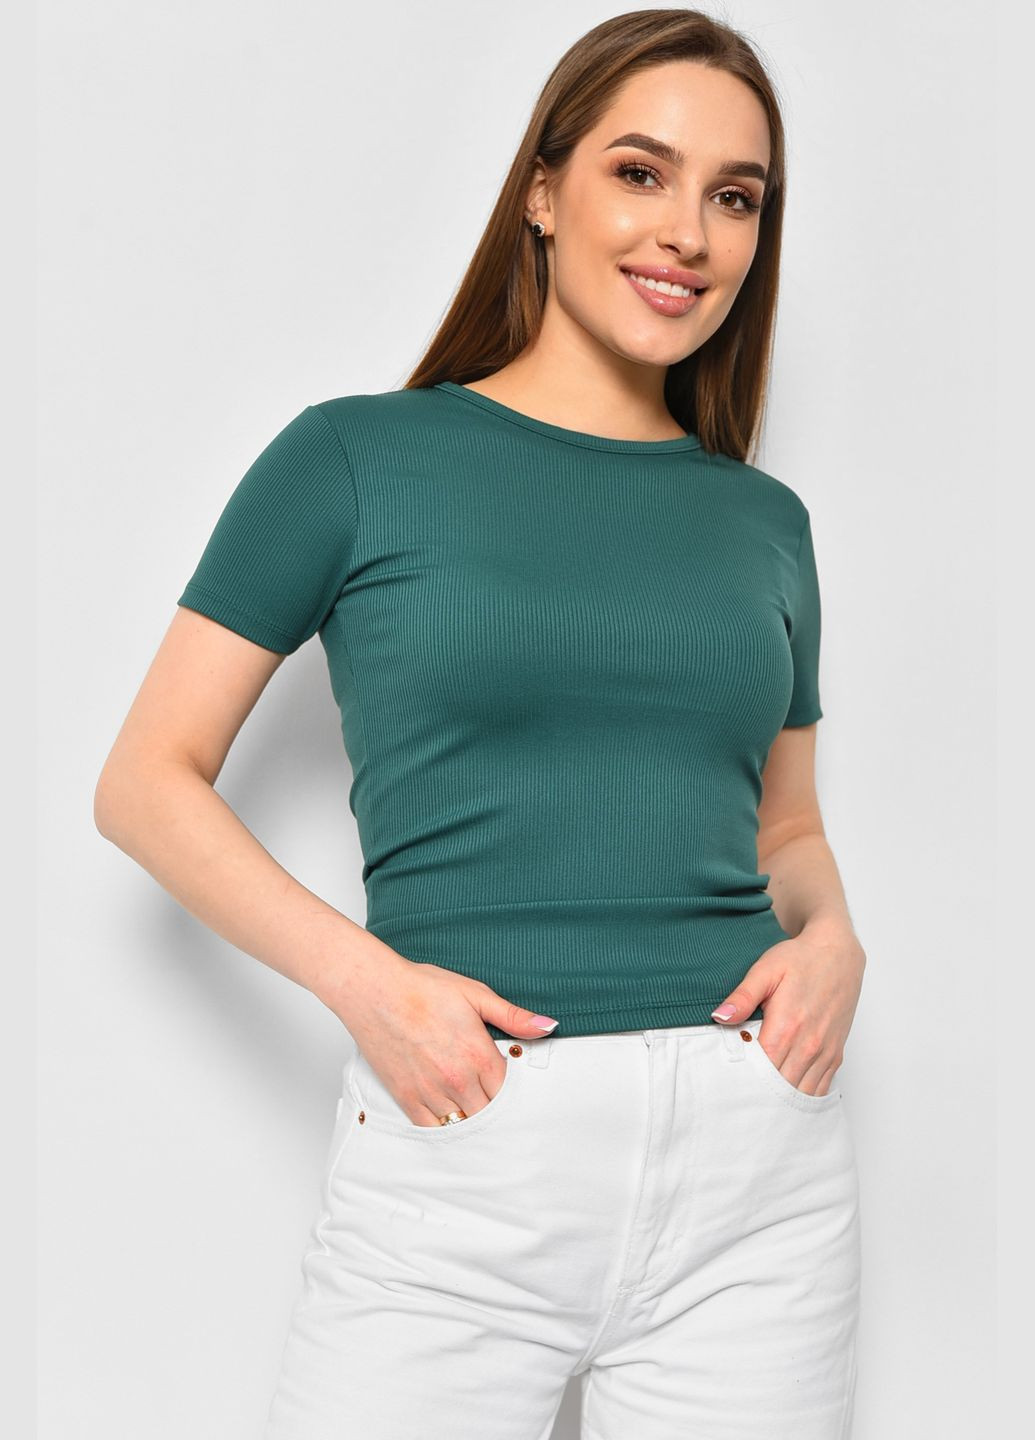 Зеленая летняя футболка женская зеленого цвета Let's Shop